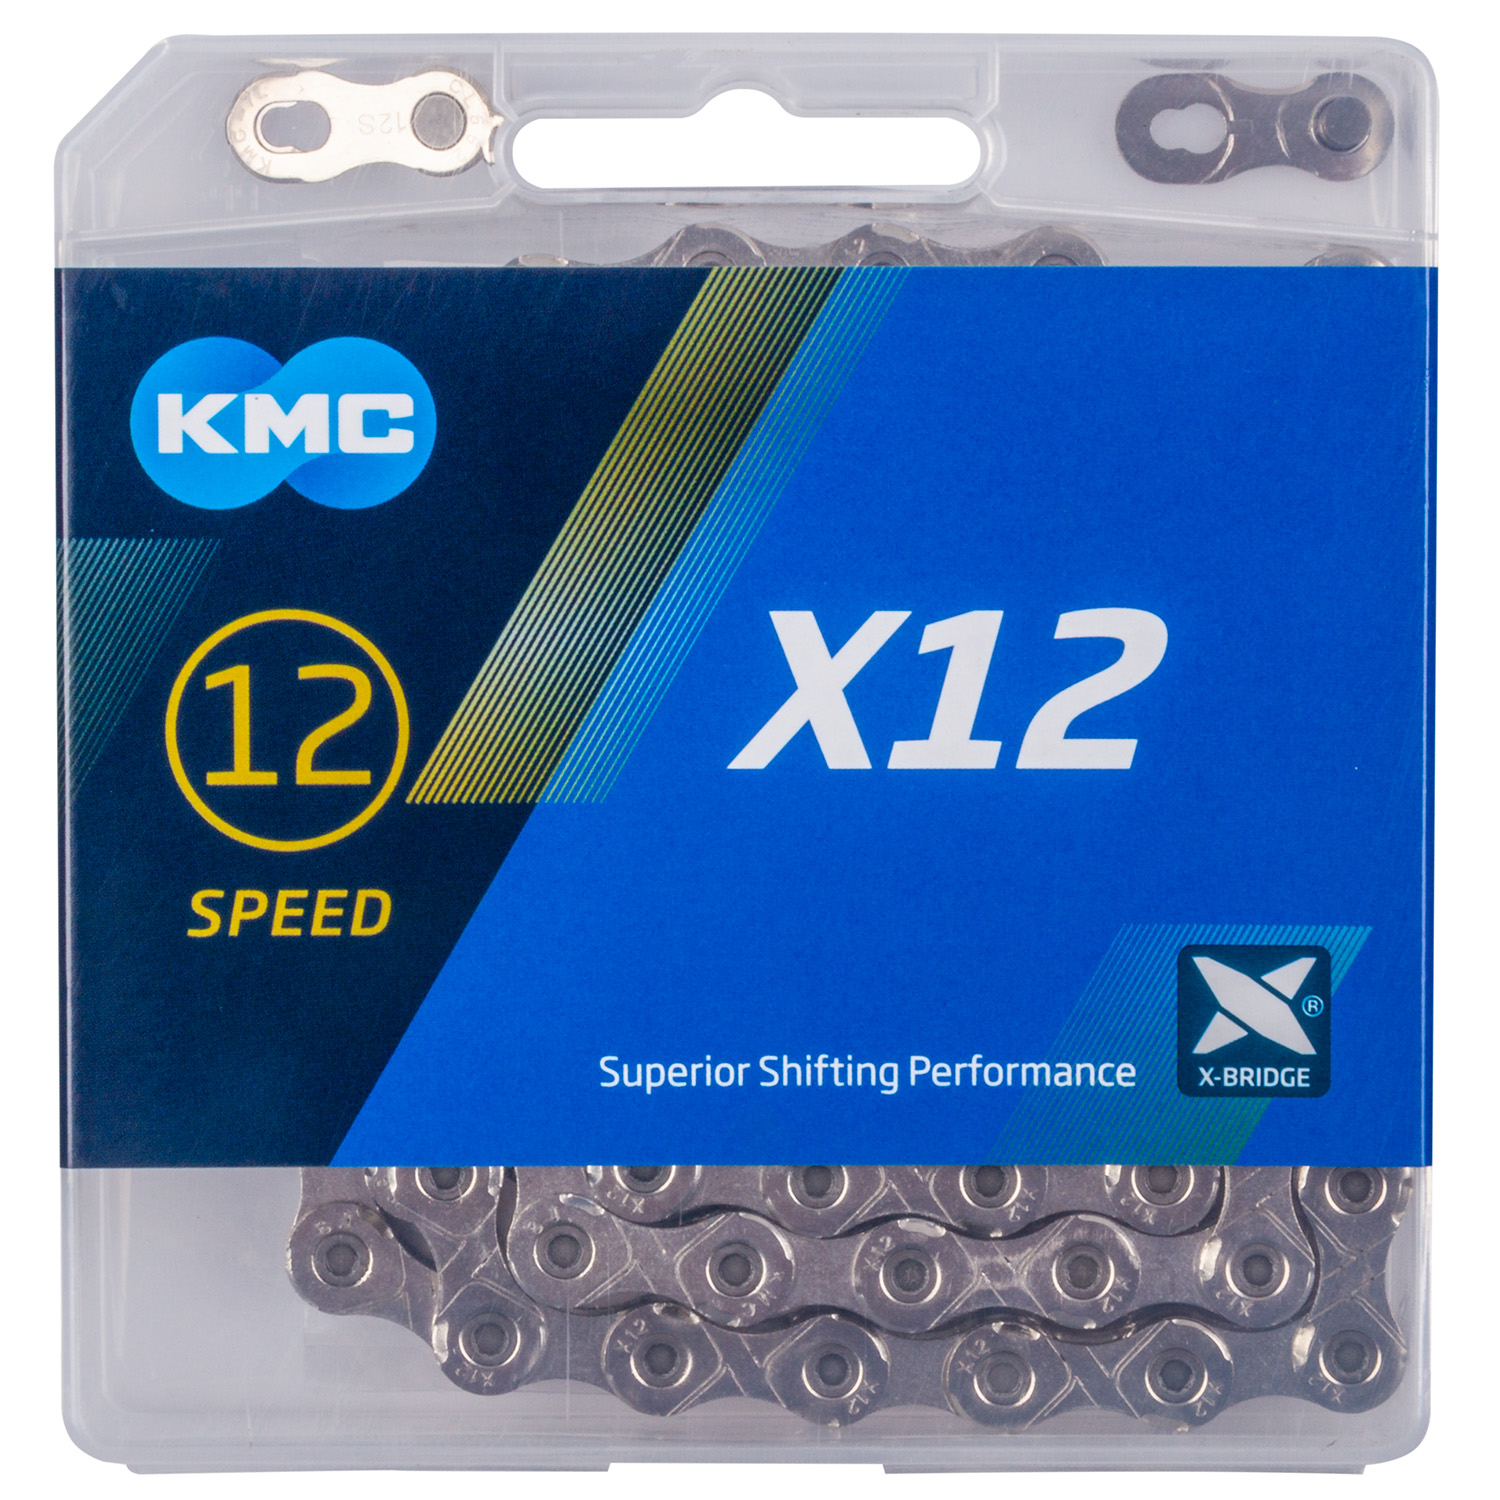 KMC Kette X12 SILVER 126 12-fach SB verpackt in Einzelbox